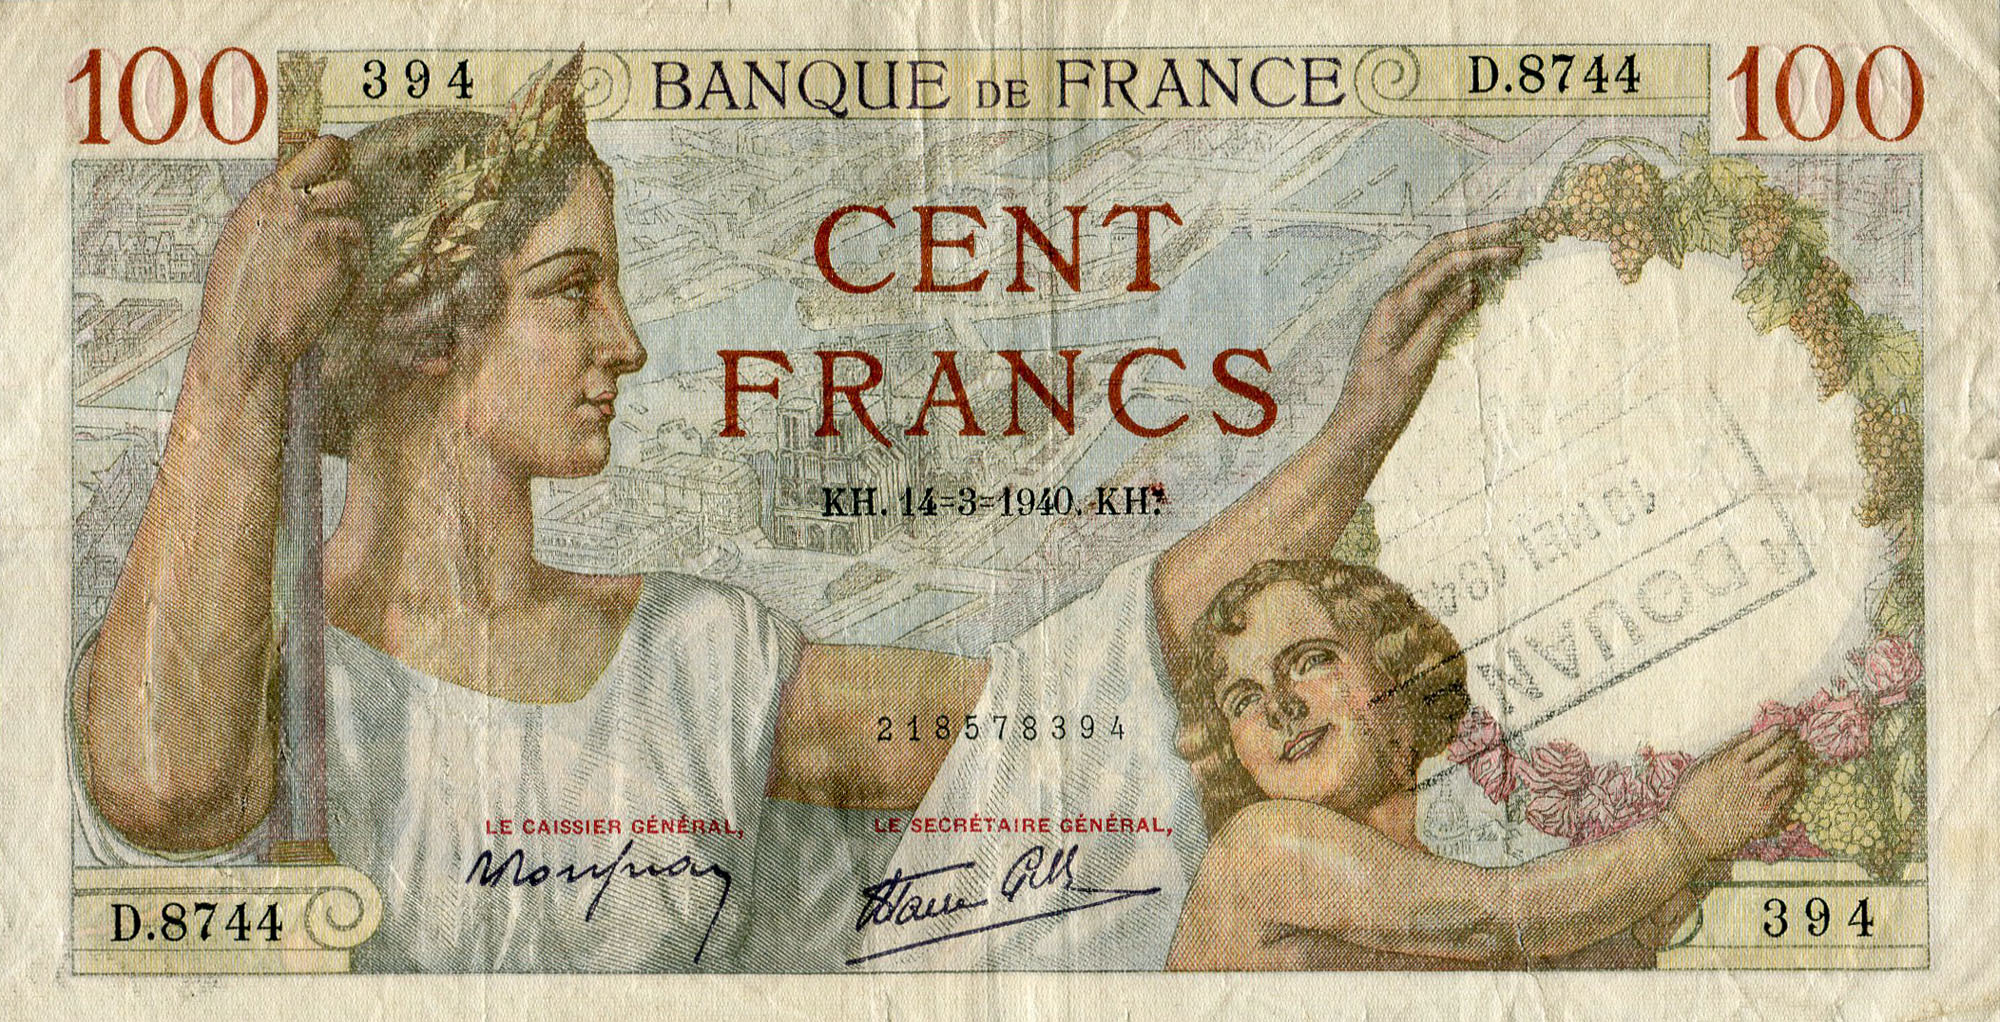 Billet de 100 francs SULLY daté 14-3-1940 avec cachet Douane 10 mei 1943 - face